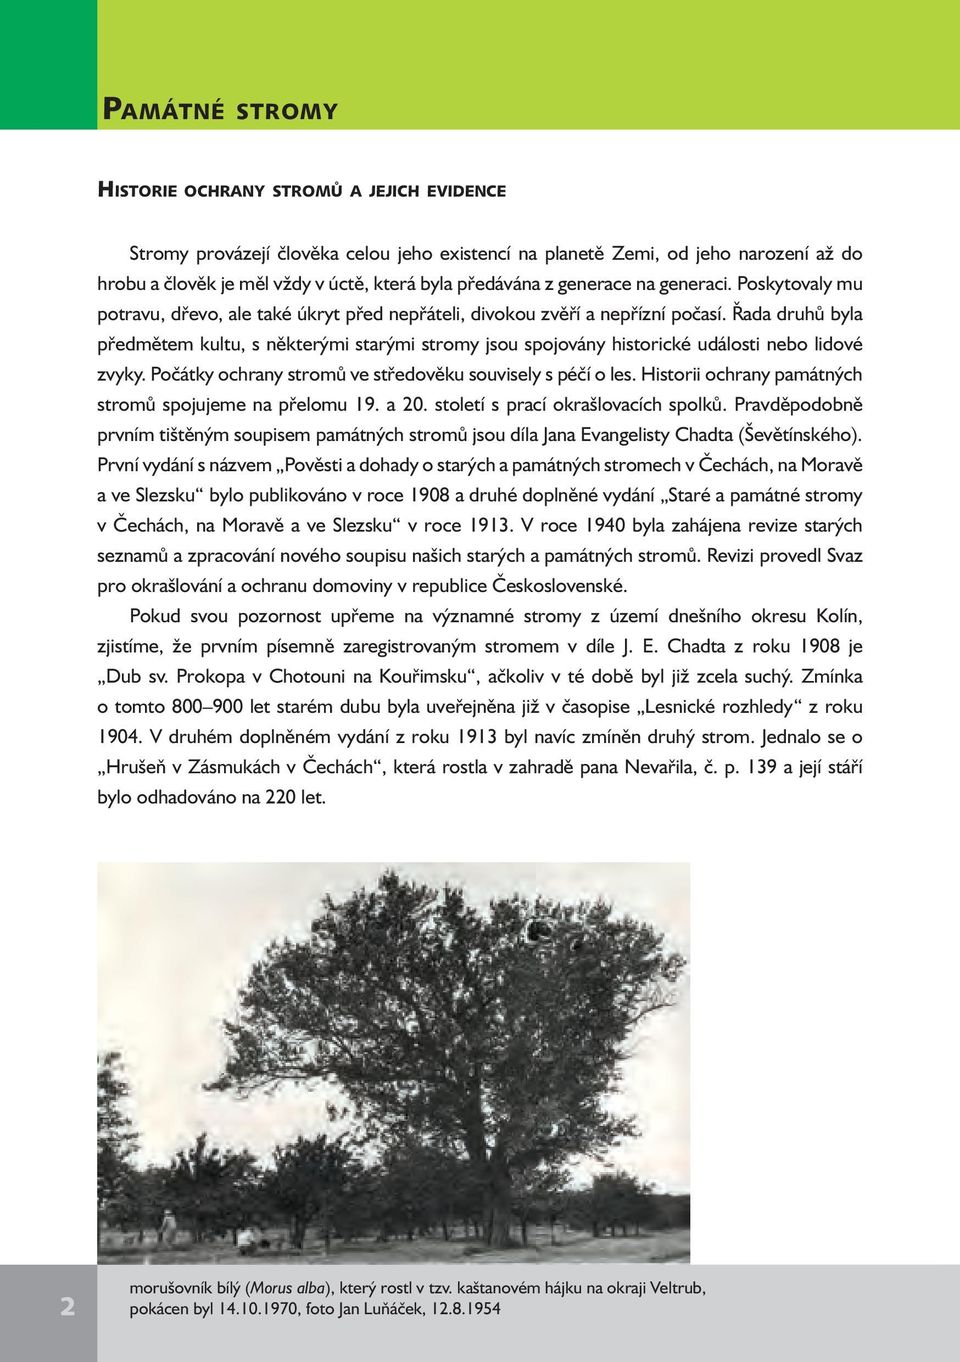 Řada druhů byla předmětem kultu, s některými starými stromy jsou spojovány historické události nebo lidové zvyky. Počátky ochrany stromů ve středověku souvisely s péčí o les.